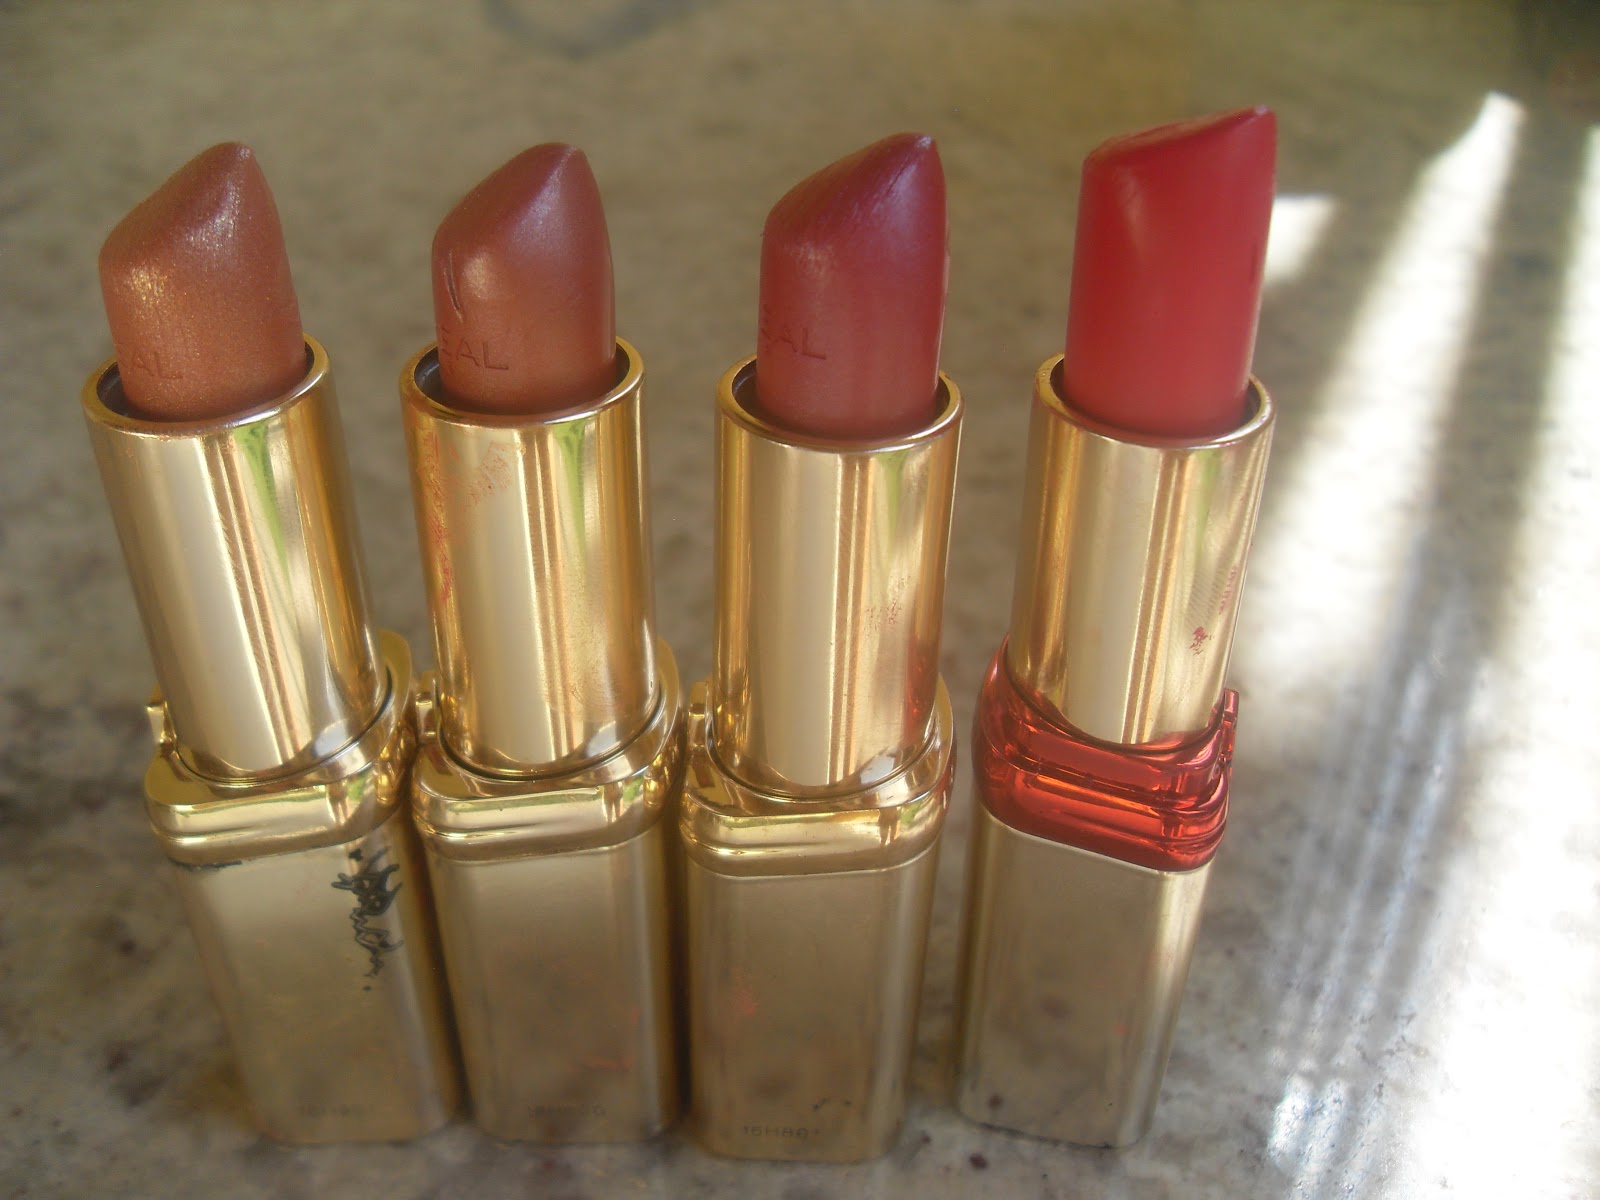 L'oreal Color Riche and Color Riche Serum Lipstick Review |Mirror on